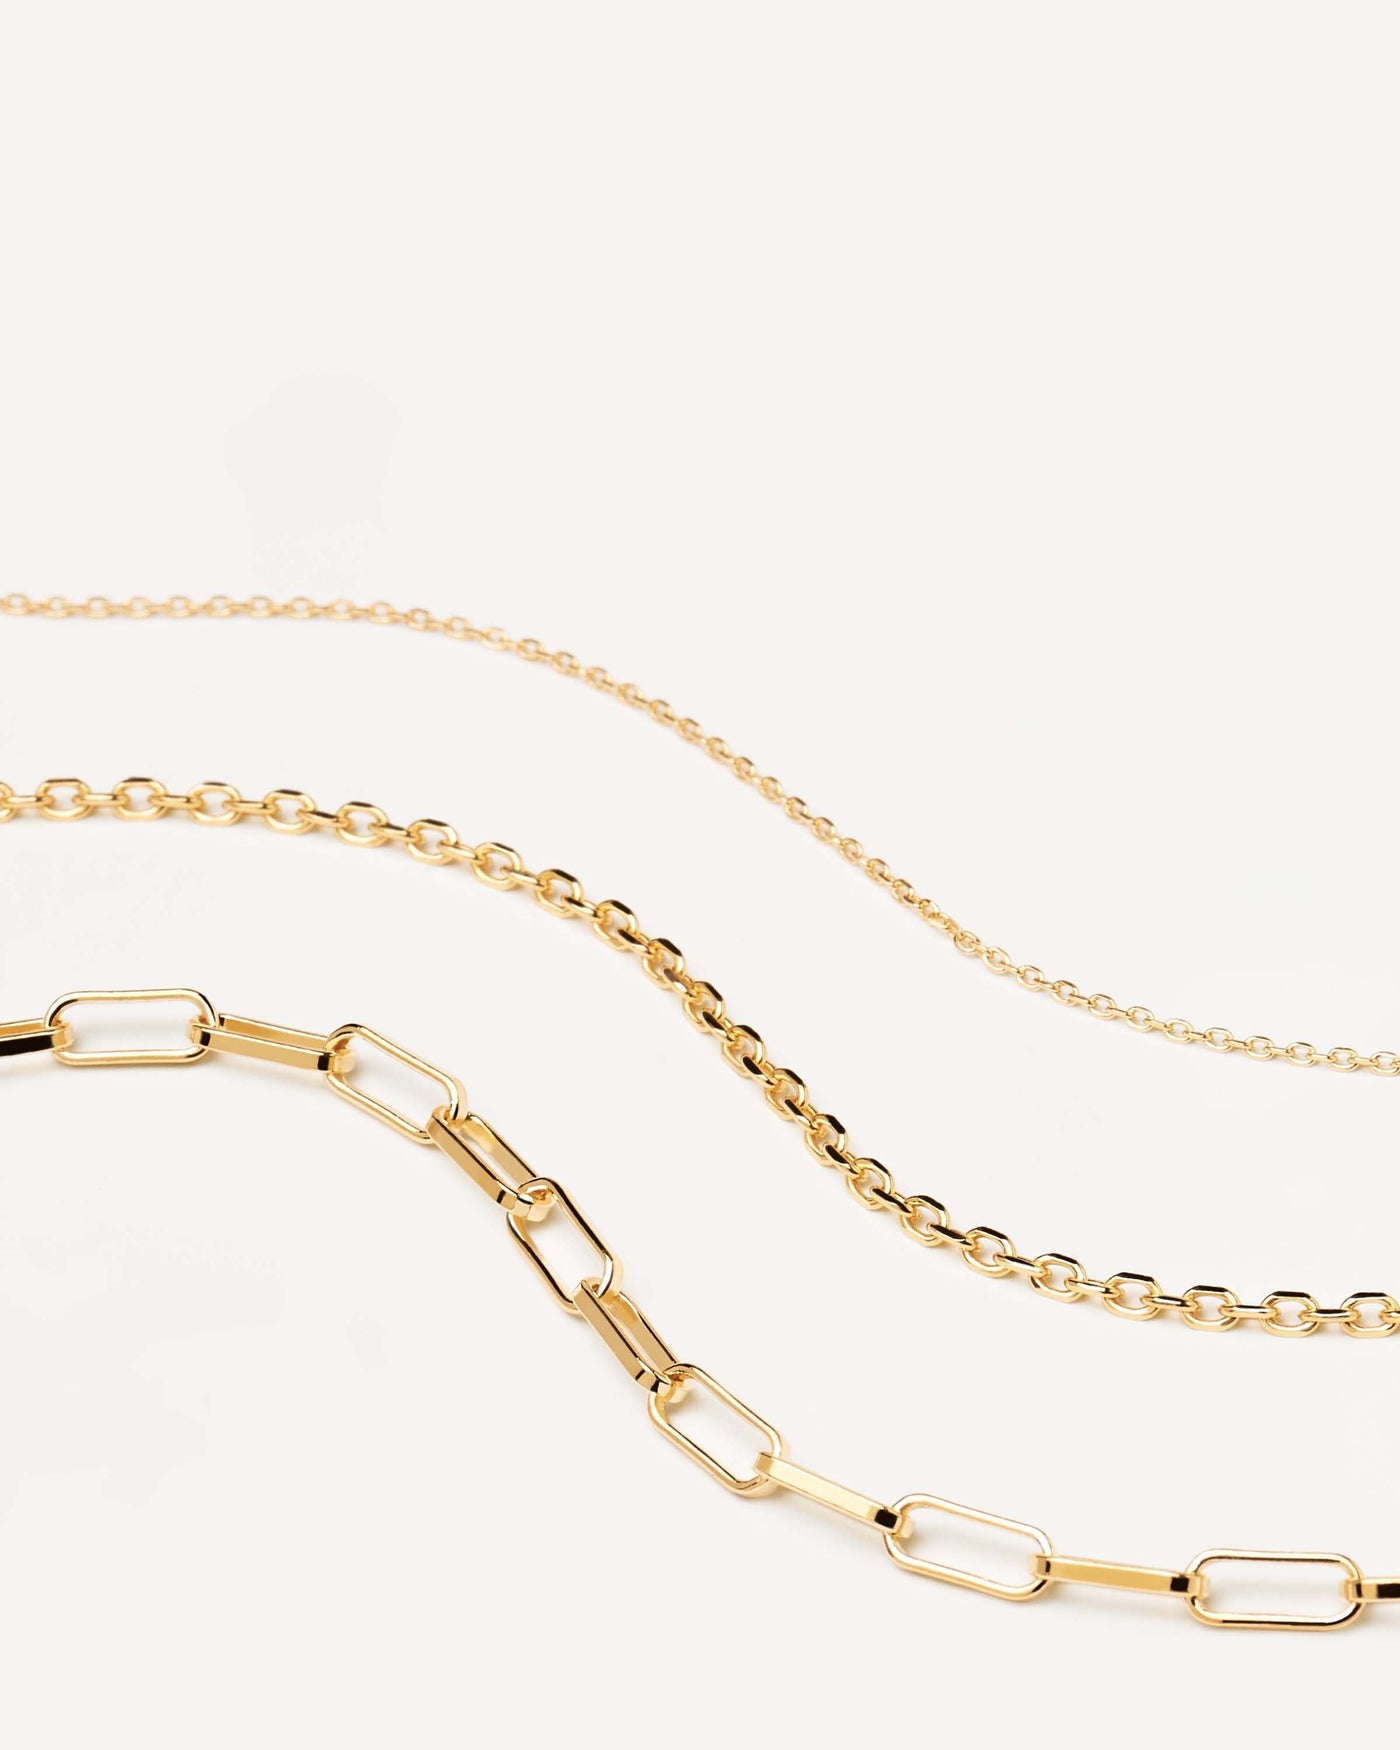 Essential Halskettenset. set von stapelbaren 18k vergoldete halsketten in drei gliedergrössen und -formen. Erhalten Sie die neuesten Produkte von PDPAOLA. Geben Sie Ihre Bestellung sicher auf und erhalten Sie diesen Bestseller.